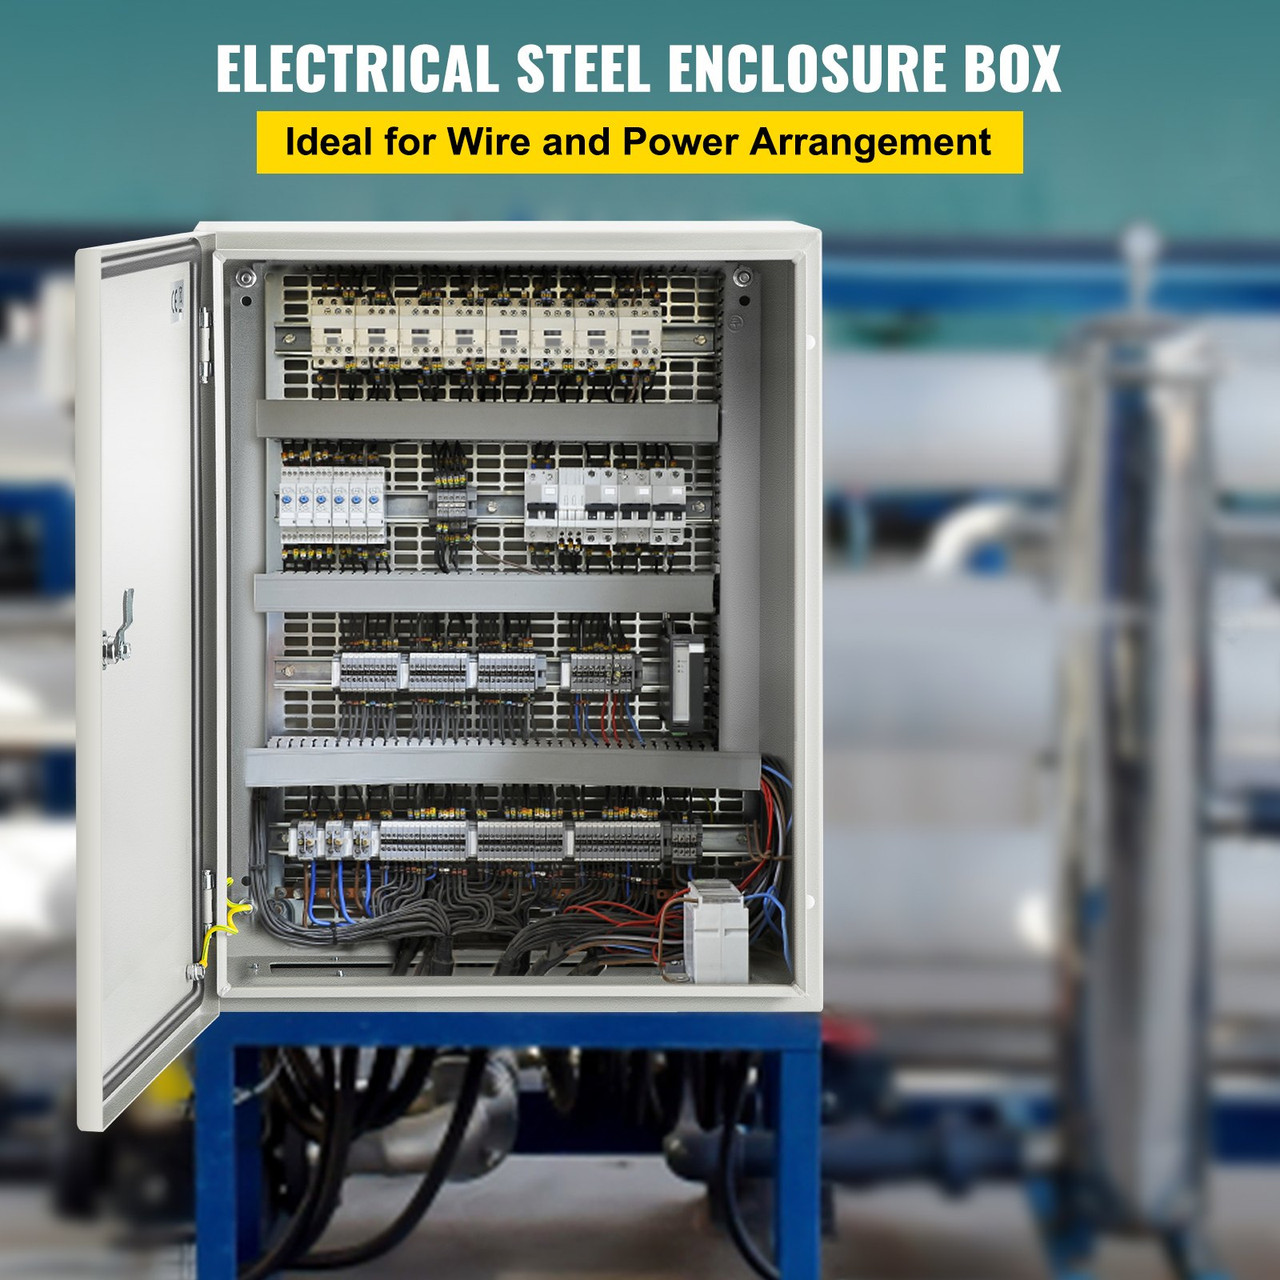 NEMA Steel Enclosure, 20 x 16 x 8'' NEMA 4X Steel Electrical Box, IP66 Waterproof & Dustproof, Outdoor/Indoor Electrical Junction Box, With Mounting Plate